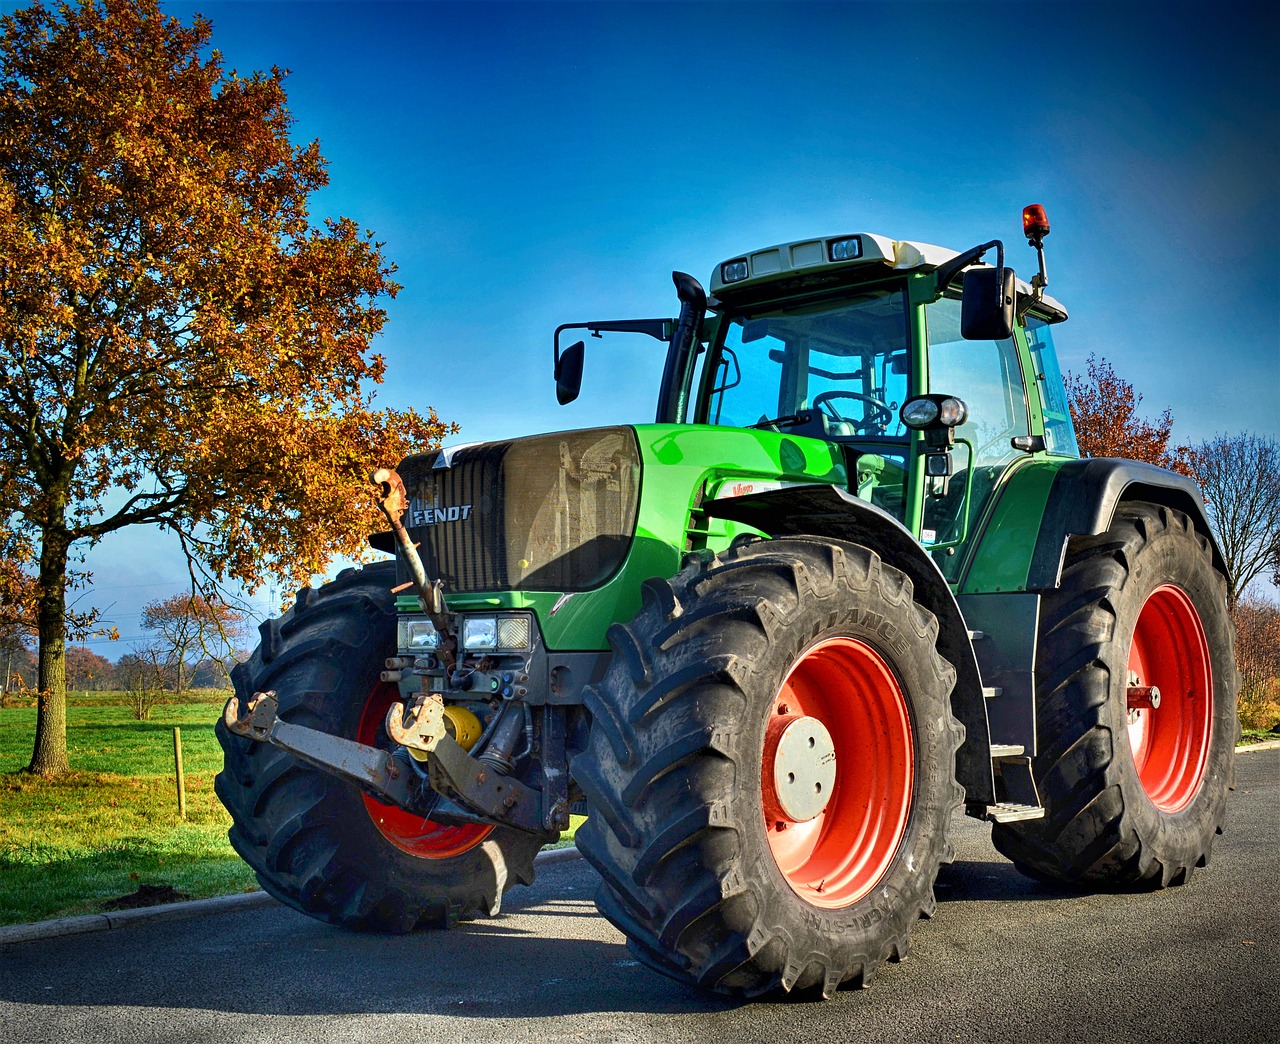 fendt  fendt 930  tractor free photo